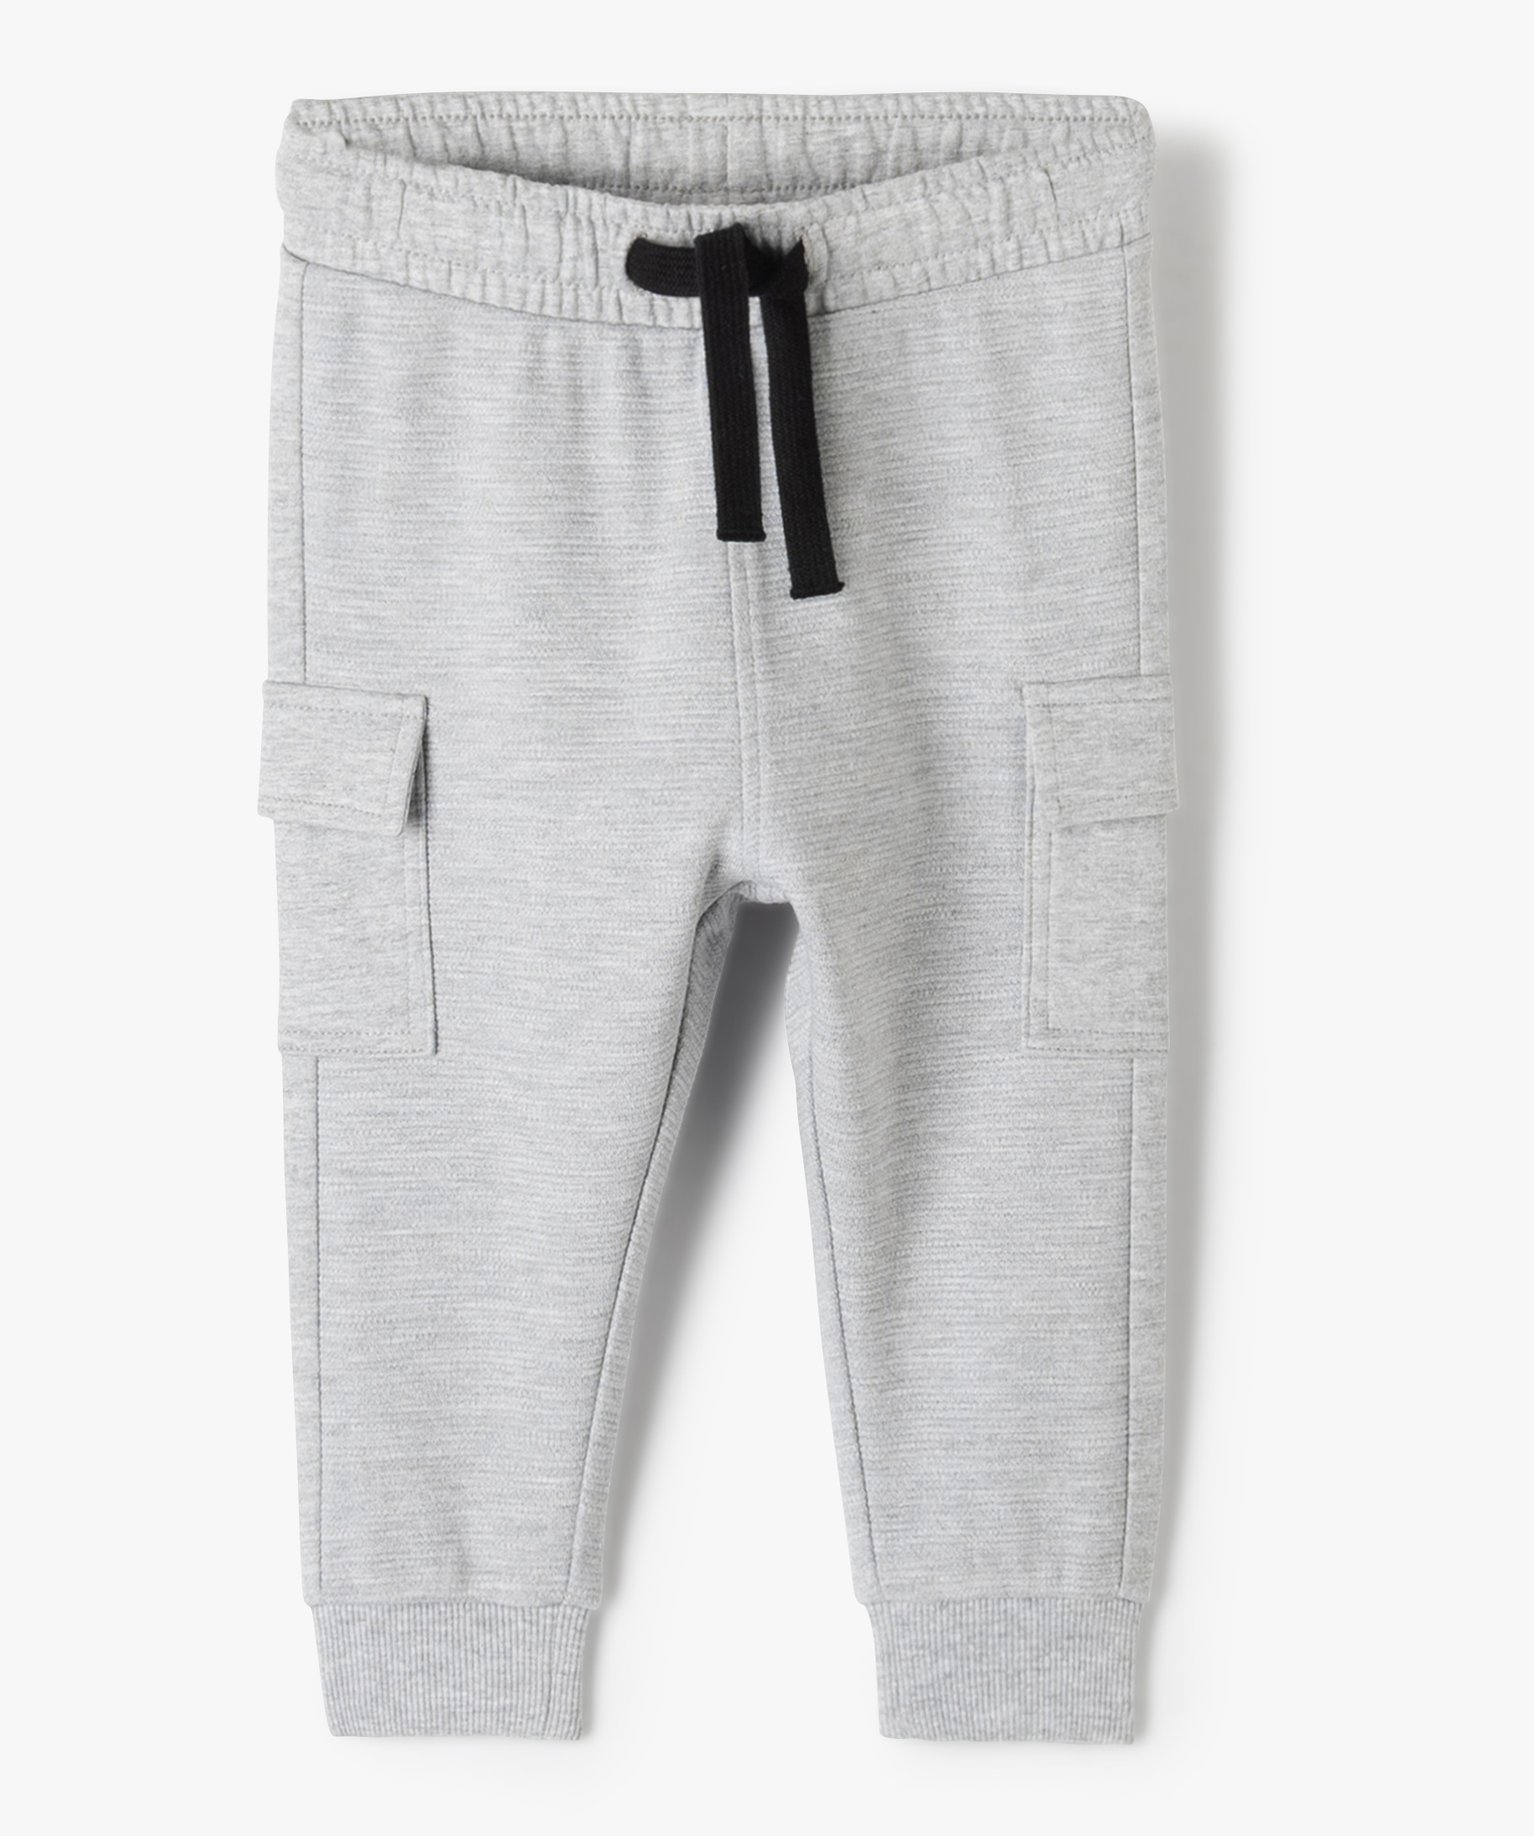 pantalon de jogging bebe garcon en maille texturee gris